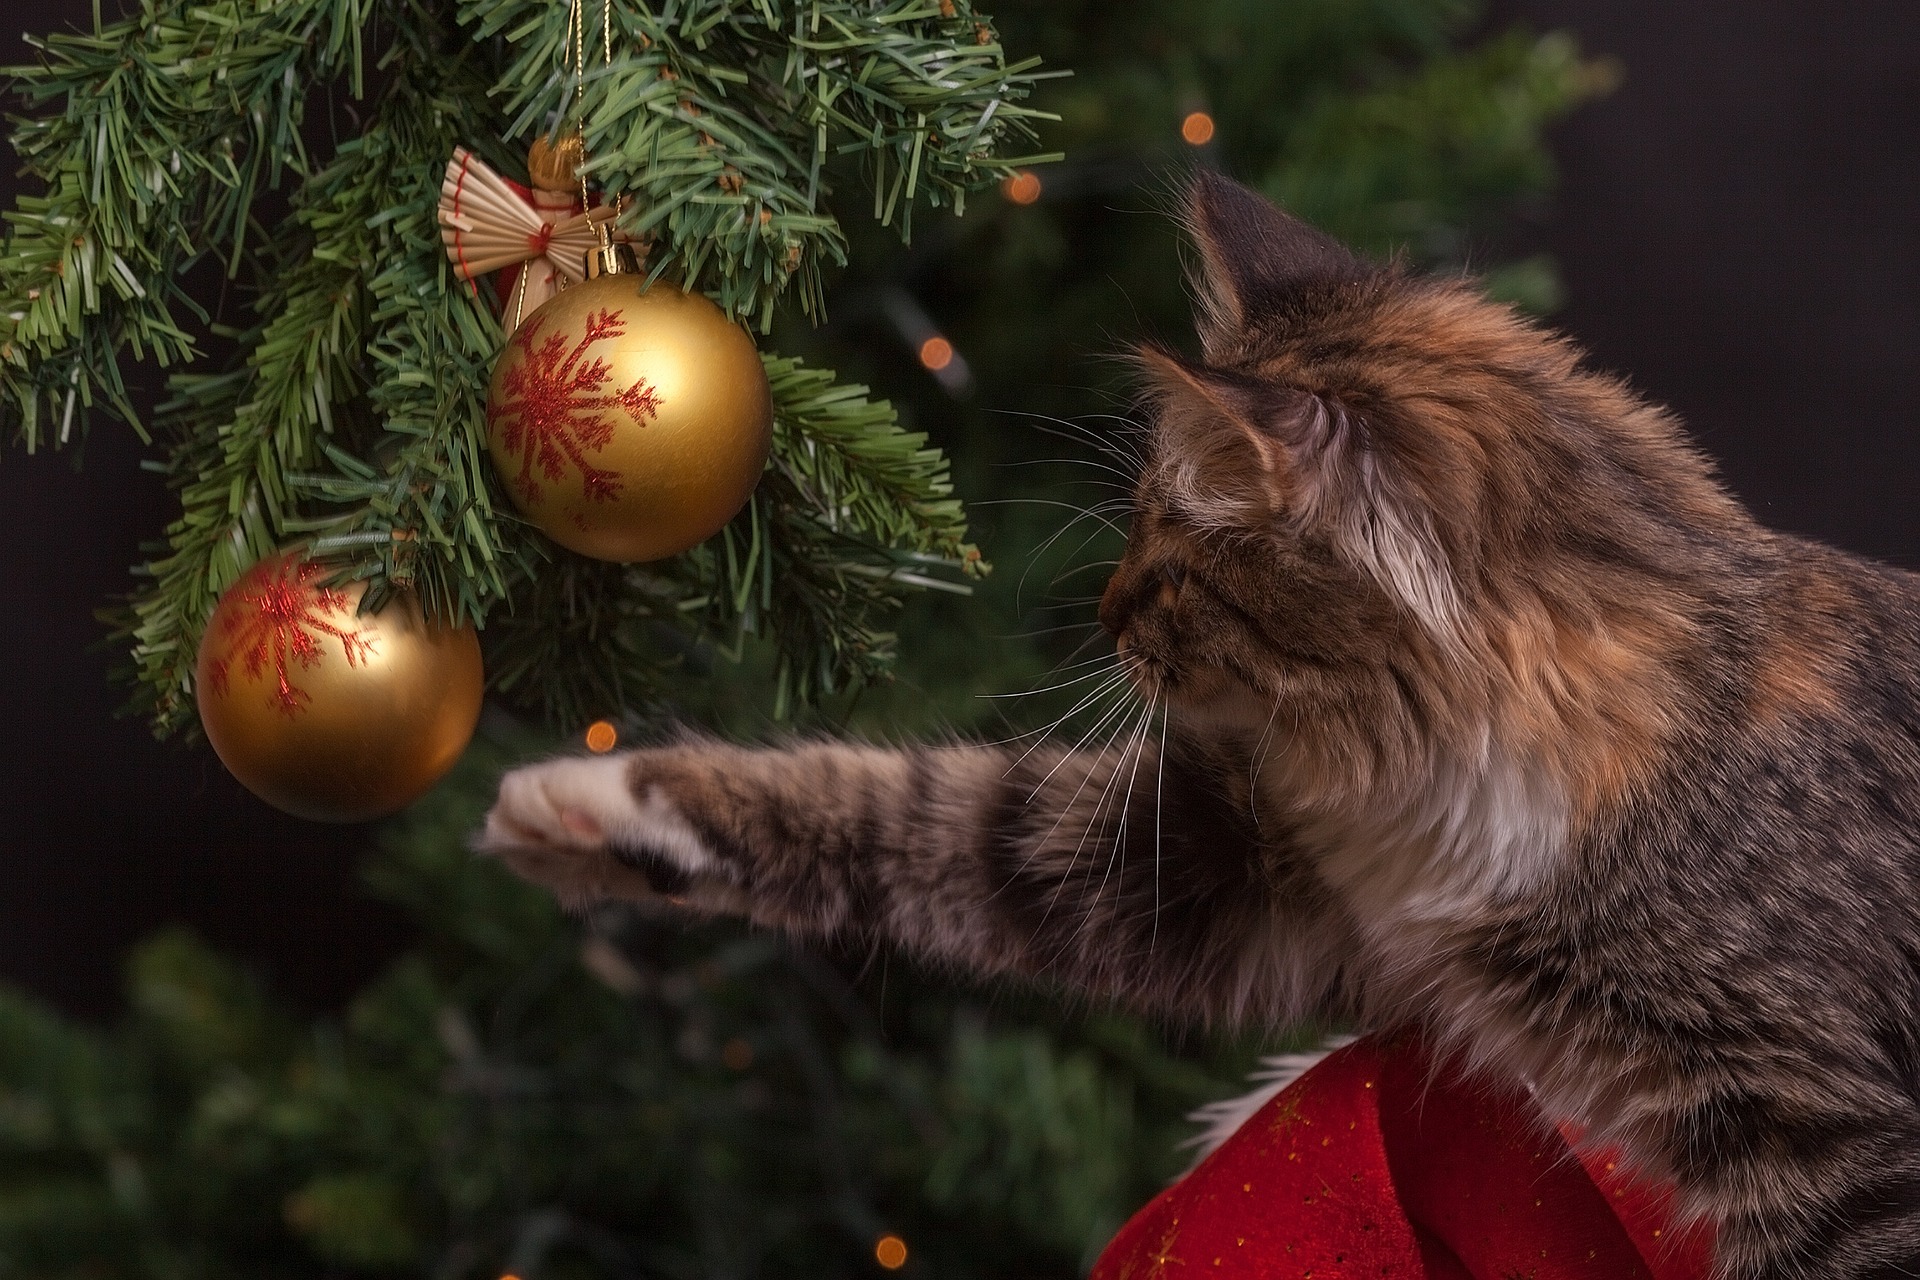 cat & ornaments